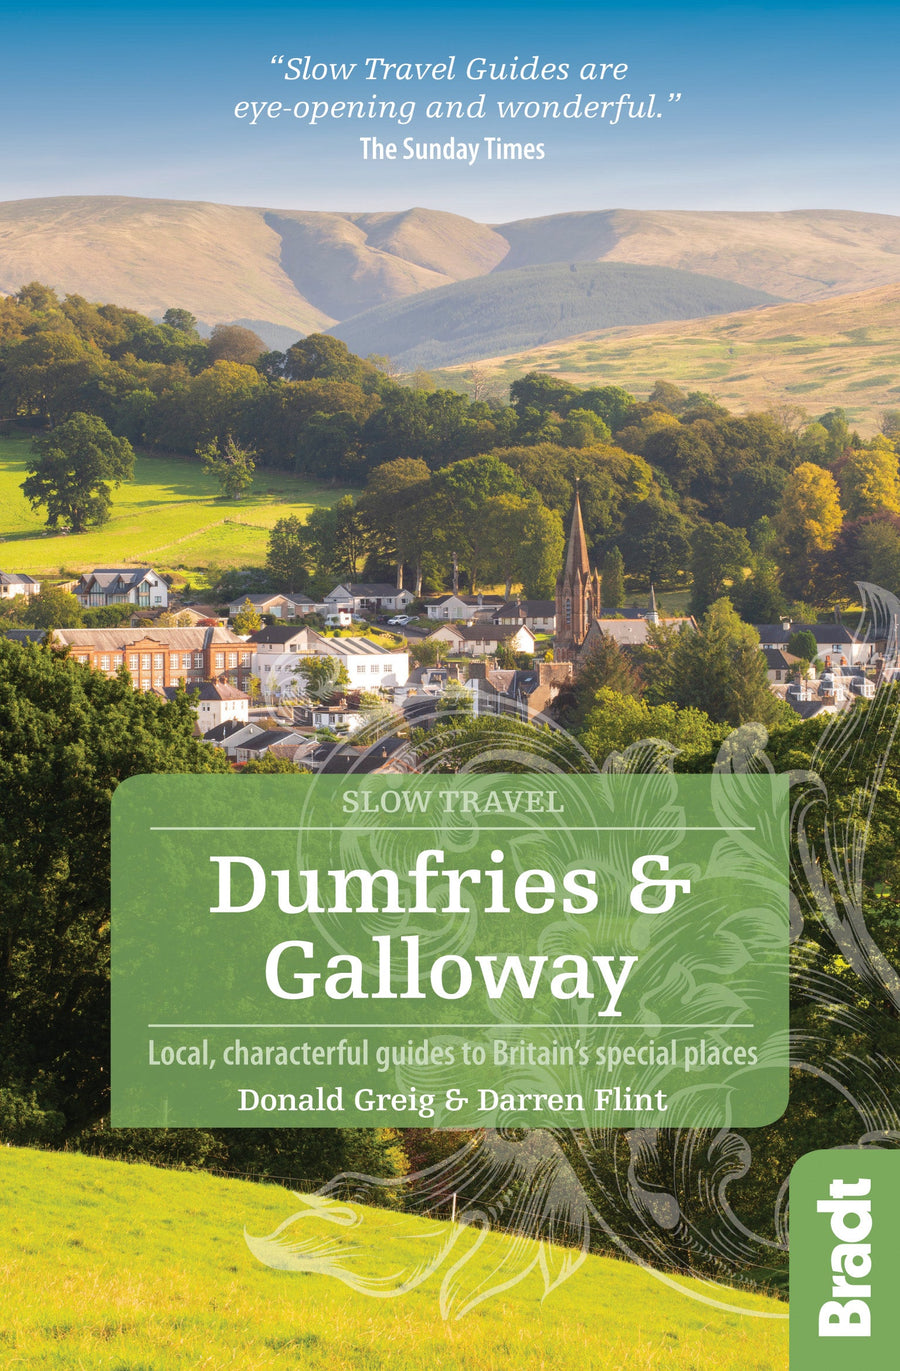 Guide de voyage (en anglais) - Dumfries & Galloway | Bradt guide de voyage Bradt 